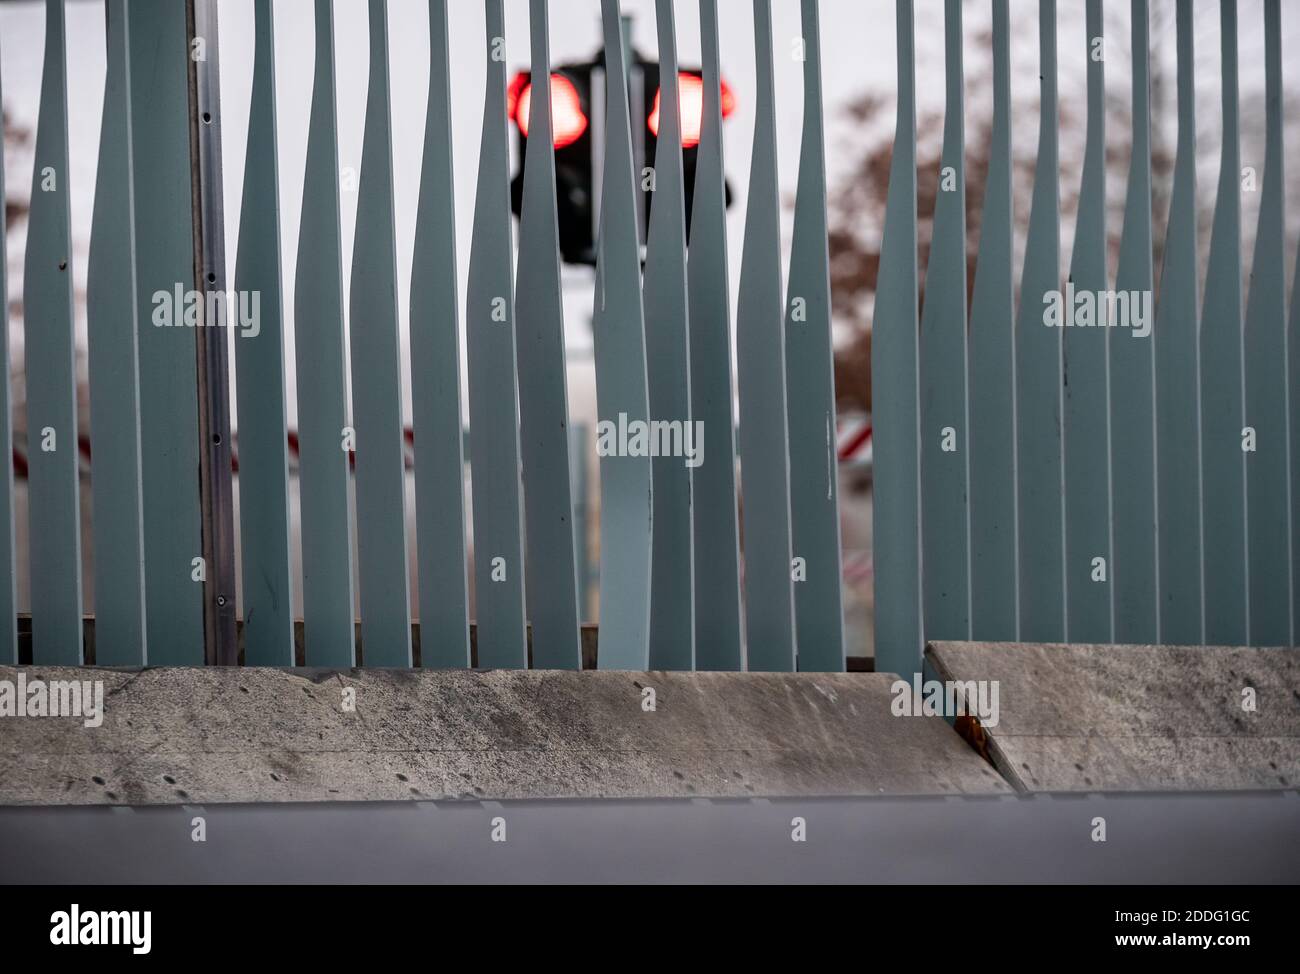 Berlin, Deutschland. November 2020. Die Metallstreben am Tor des Bundeskanzleramtes sind leicht gebogen, nachdem ein Auto gegen das Tor gefahren war. Quelle: Michael Kappeler/dpa/Alamy Live News Stockfoto